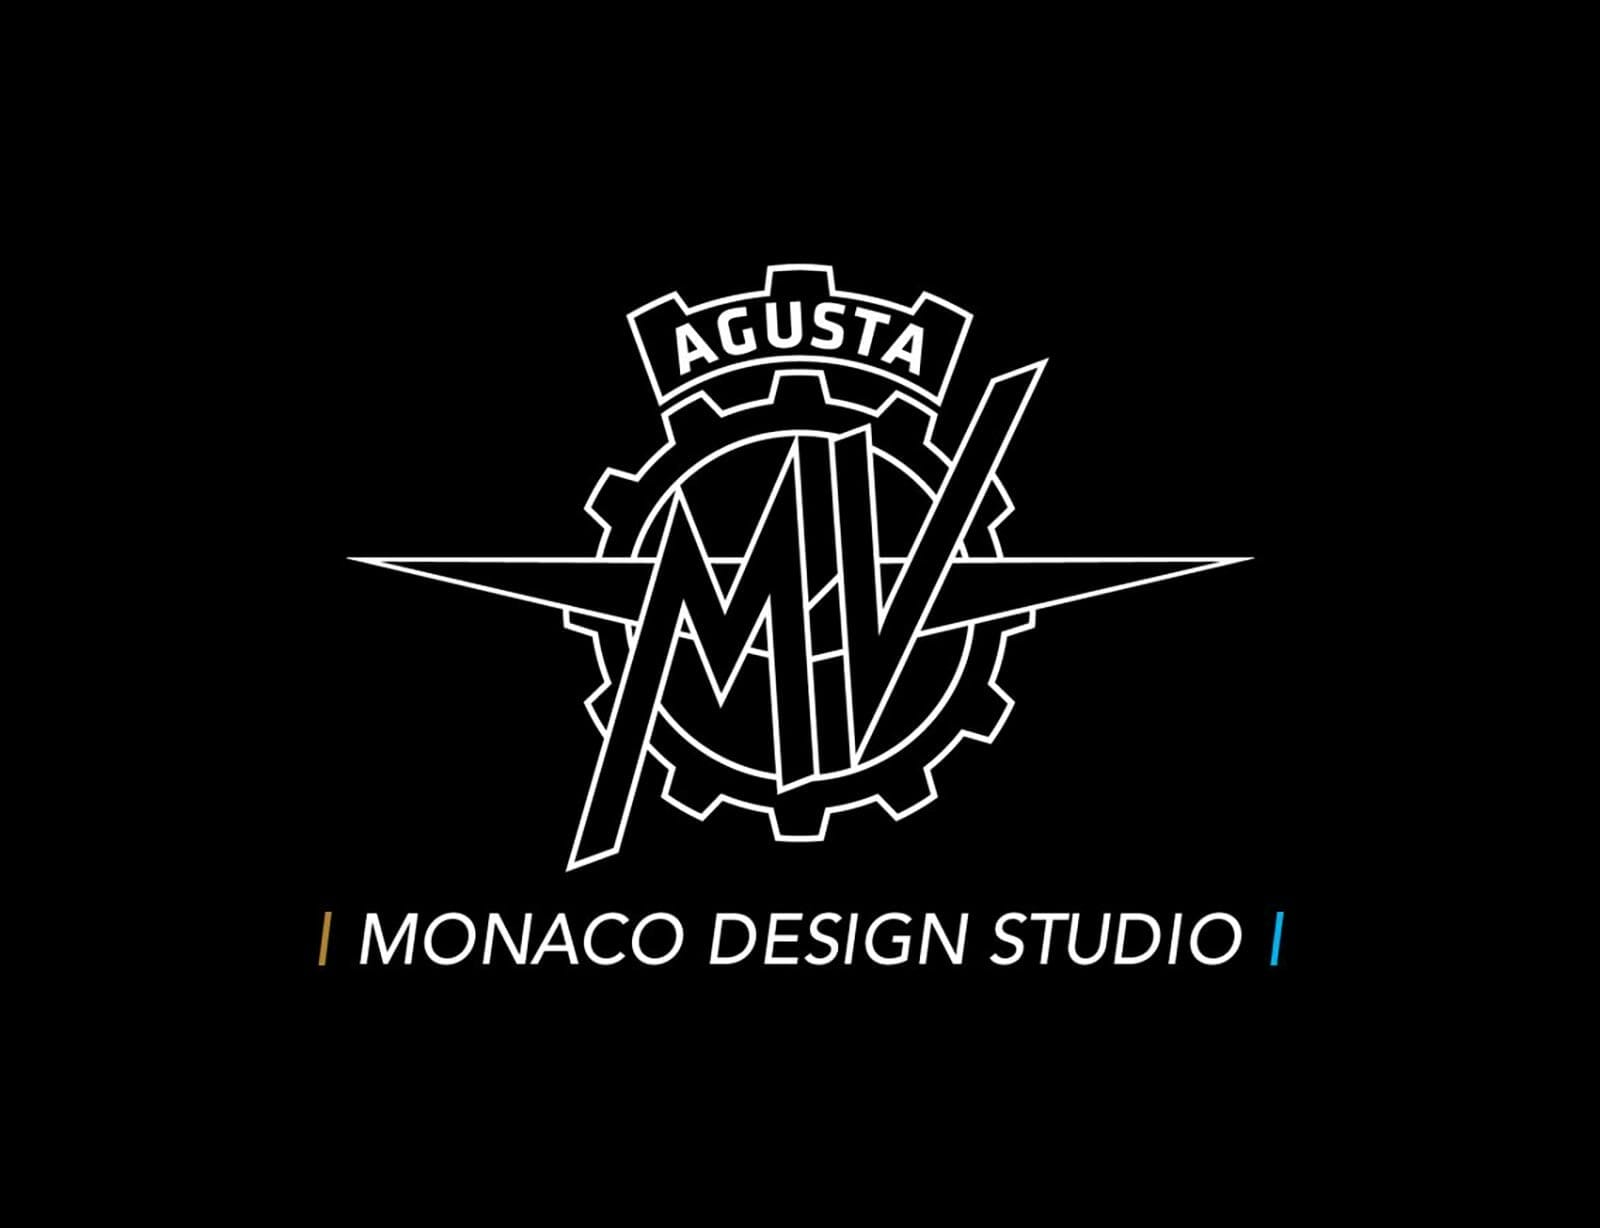 MV Agusta eröffnet neues Design Studio in Monaco
- auch in der MOTORRAD NACHRICHTEN APP